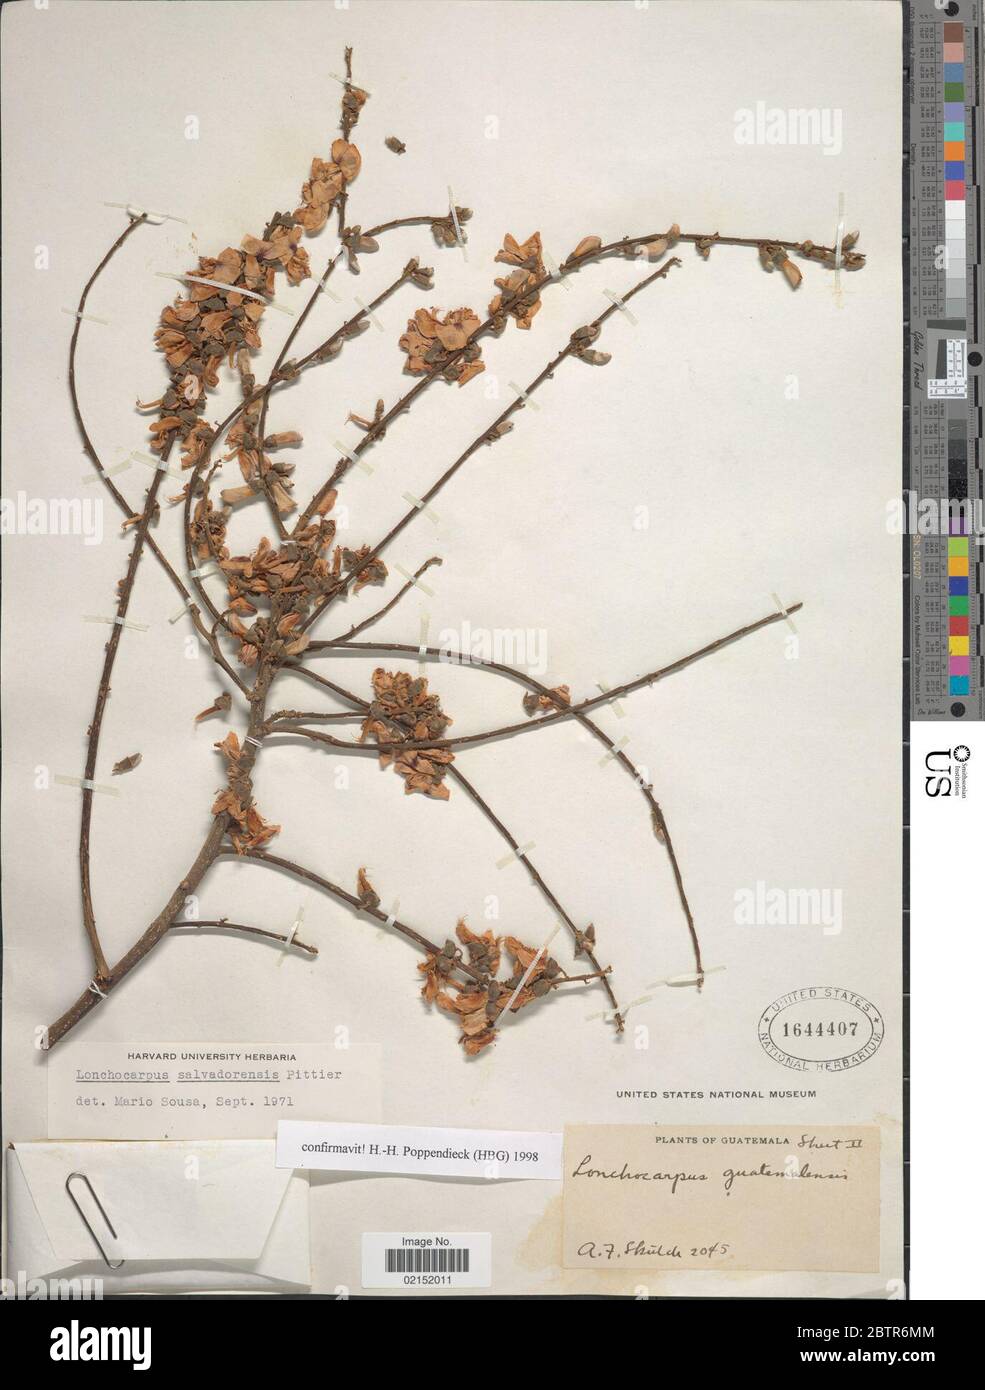 Lonchocarpus salvadorensis Pittier. Stock Photo